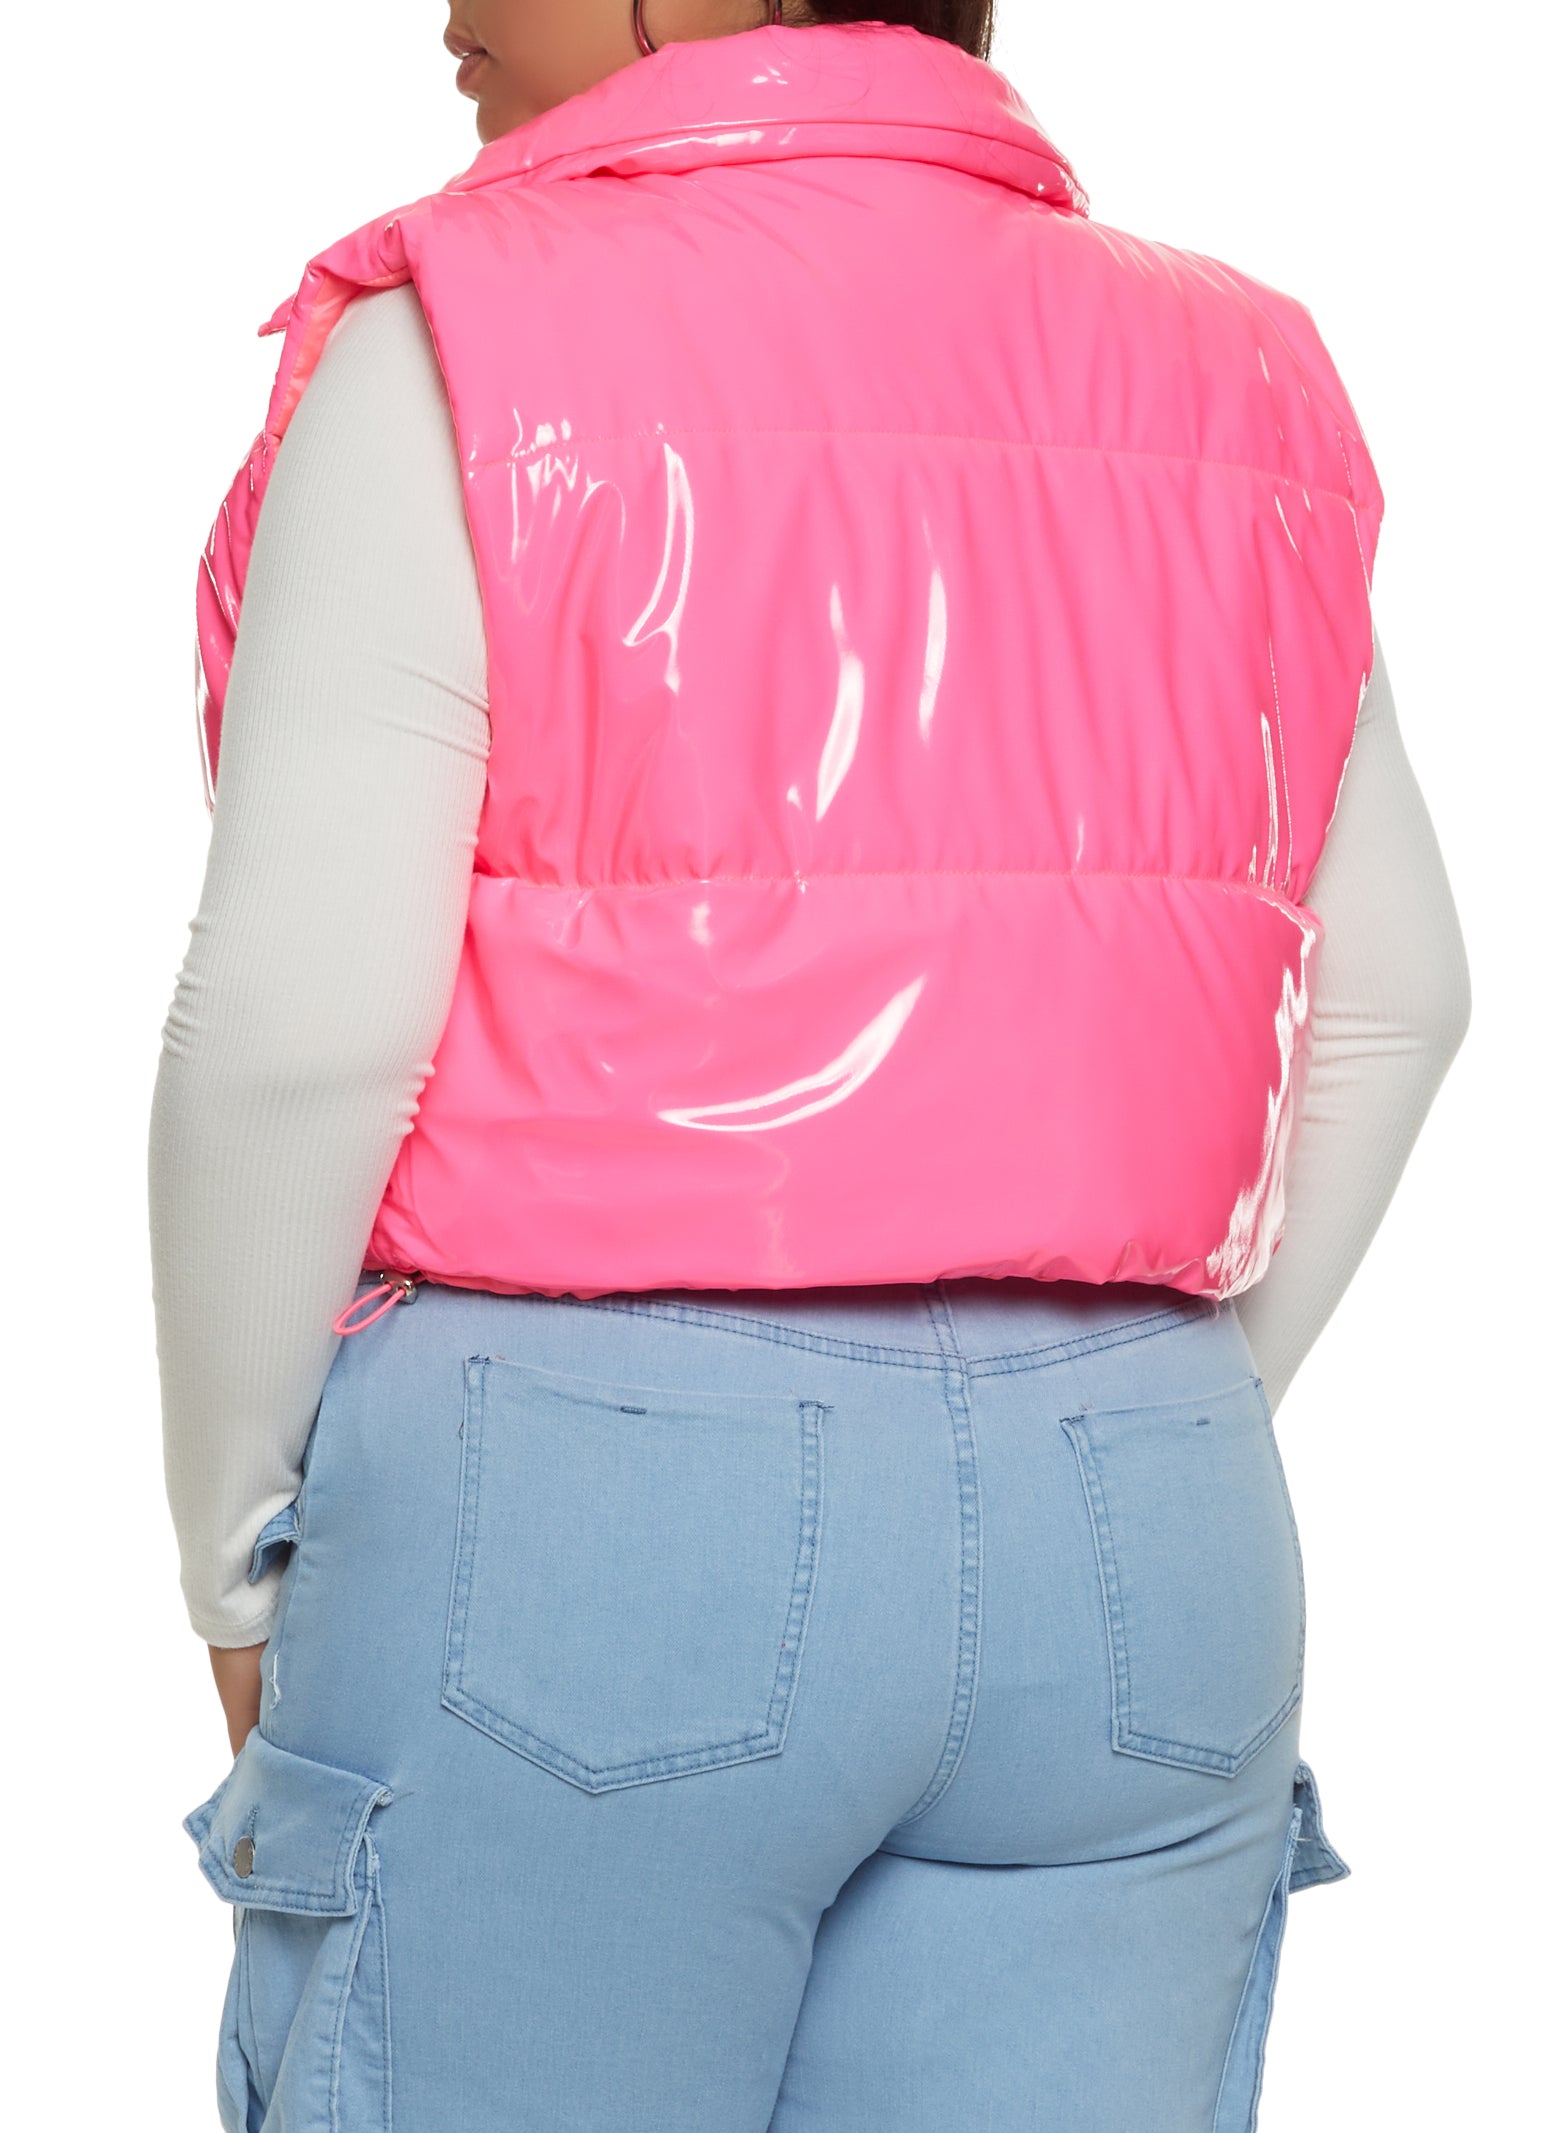 Plus Size Hot Pink Vest Top